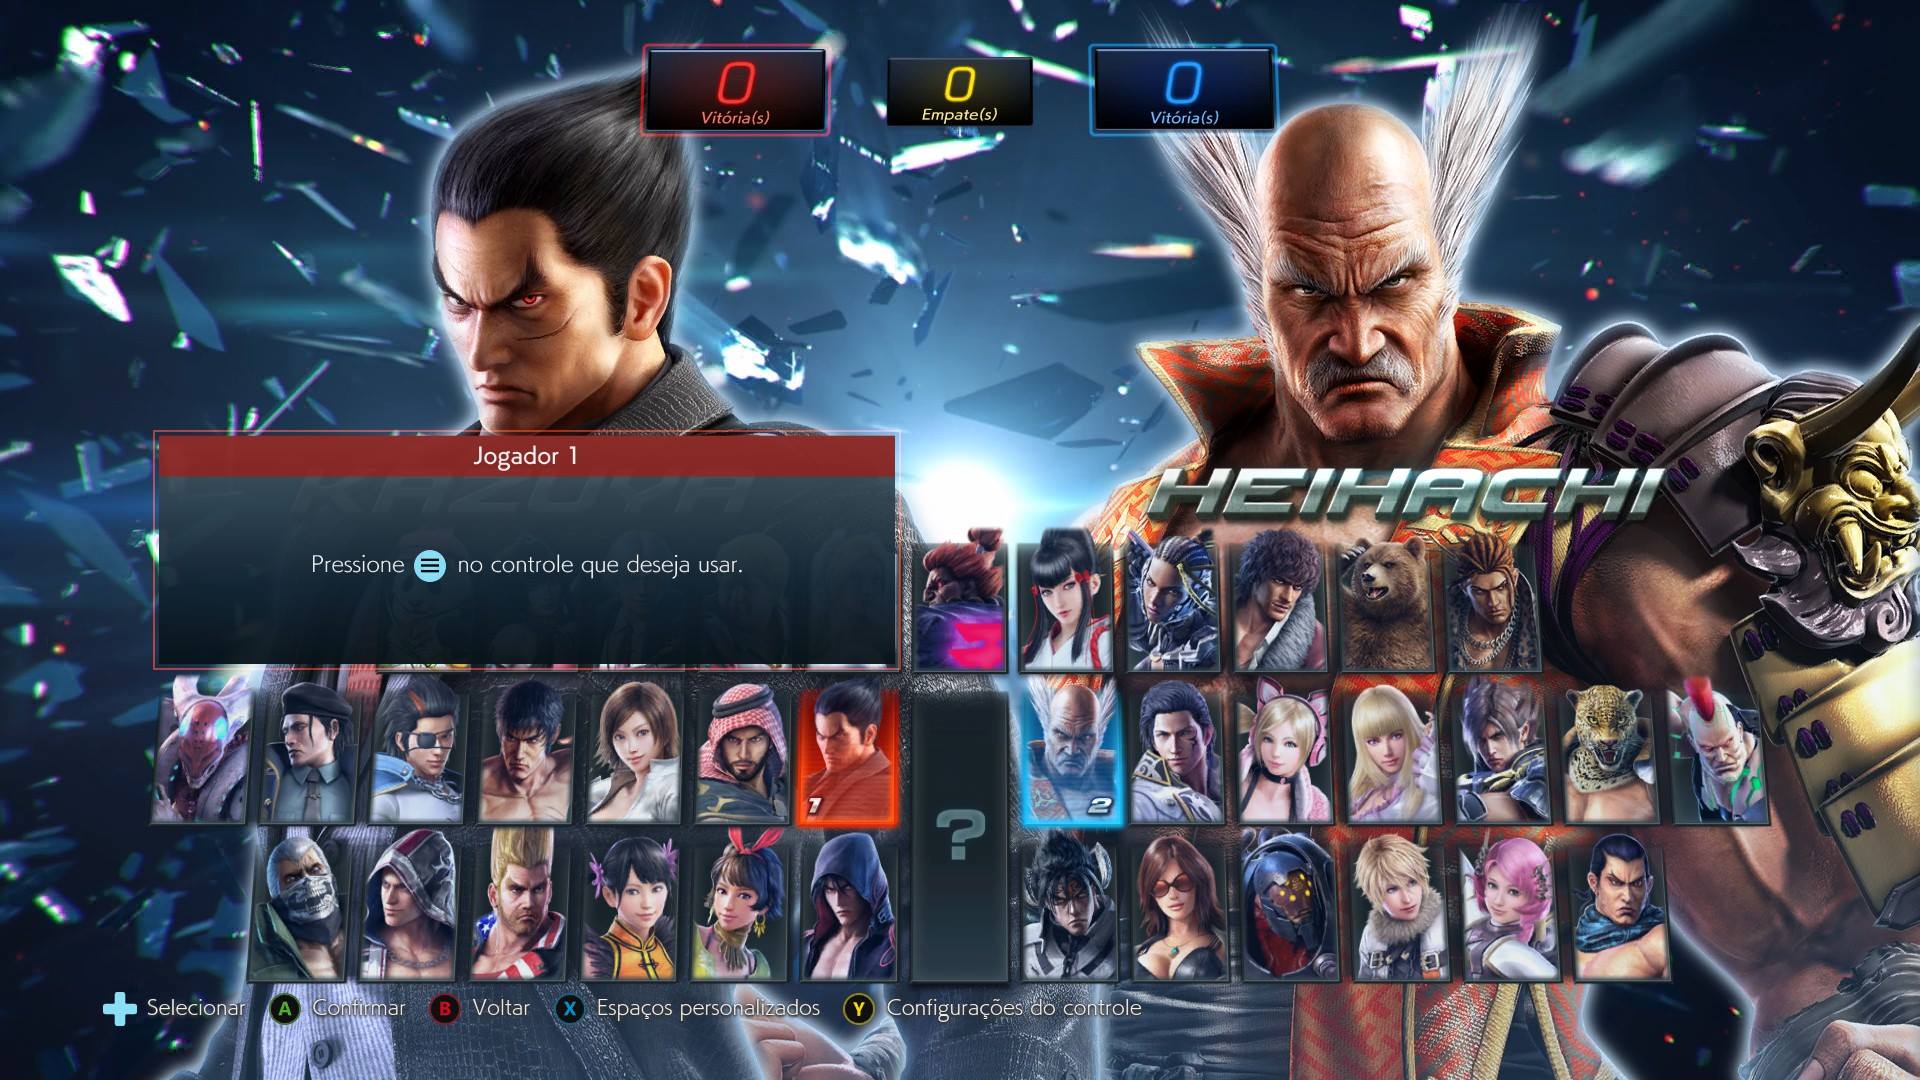 Hora do boliche com seus personagens favoritos no primeiro DLC de Tekken 7  — Portallos